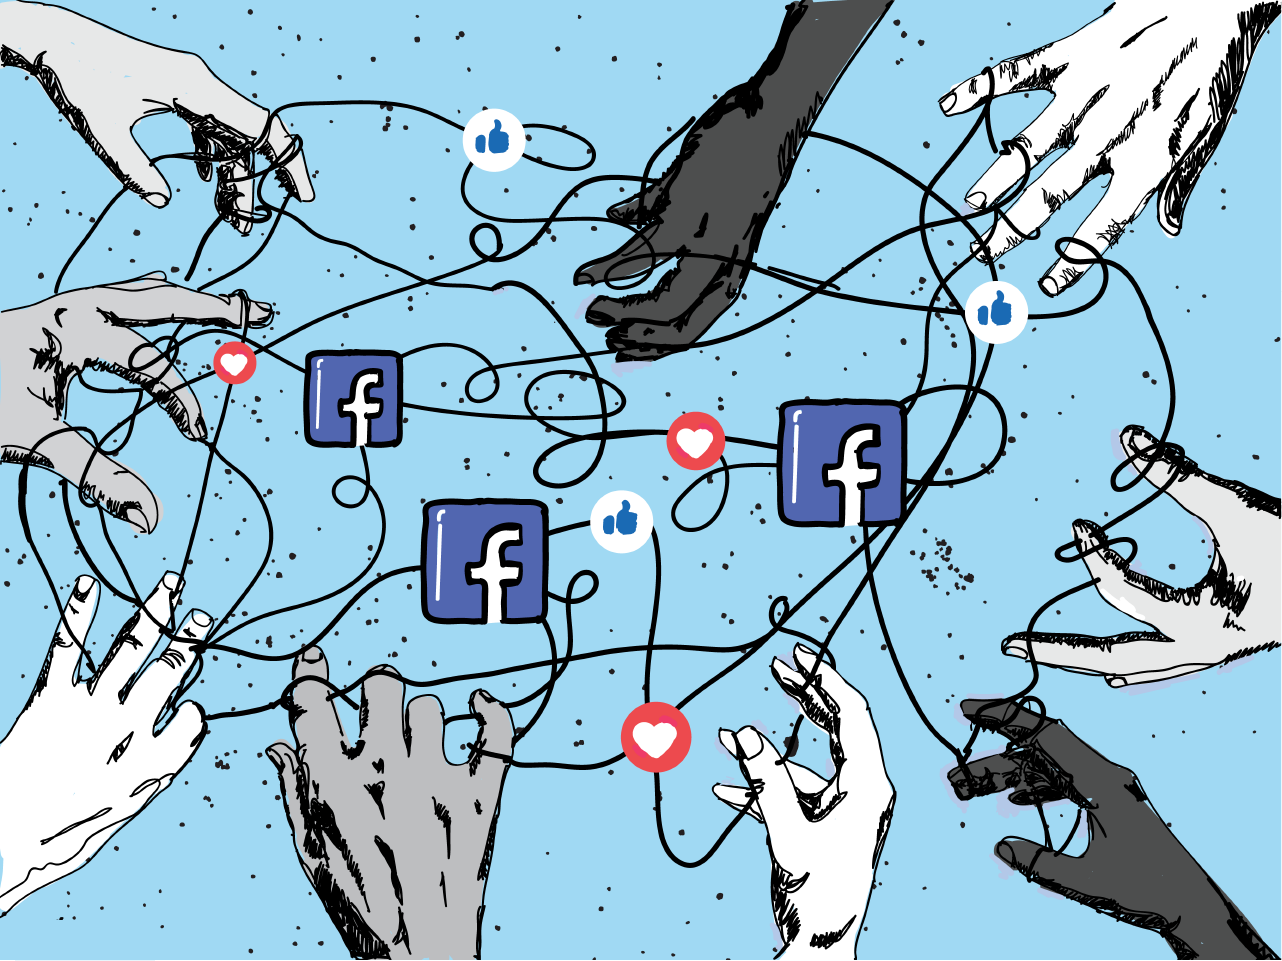 Facebook/Meta perde usuários pela primeira vez na história